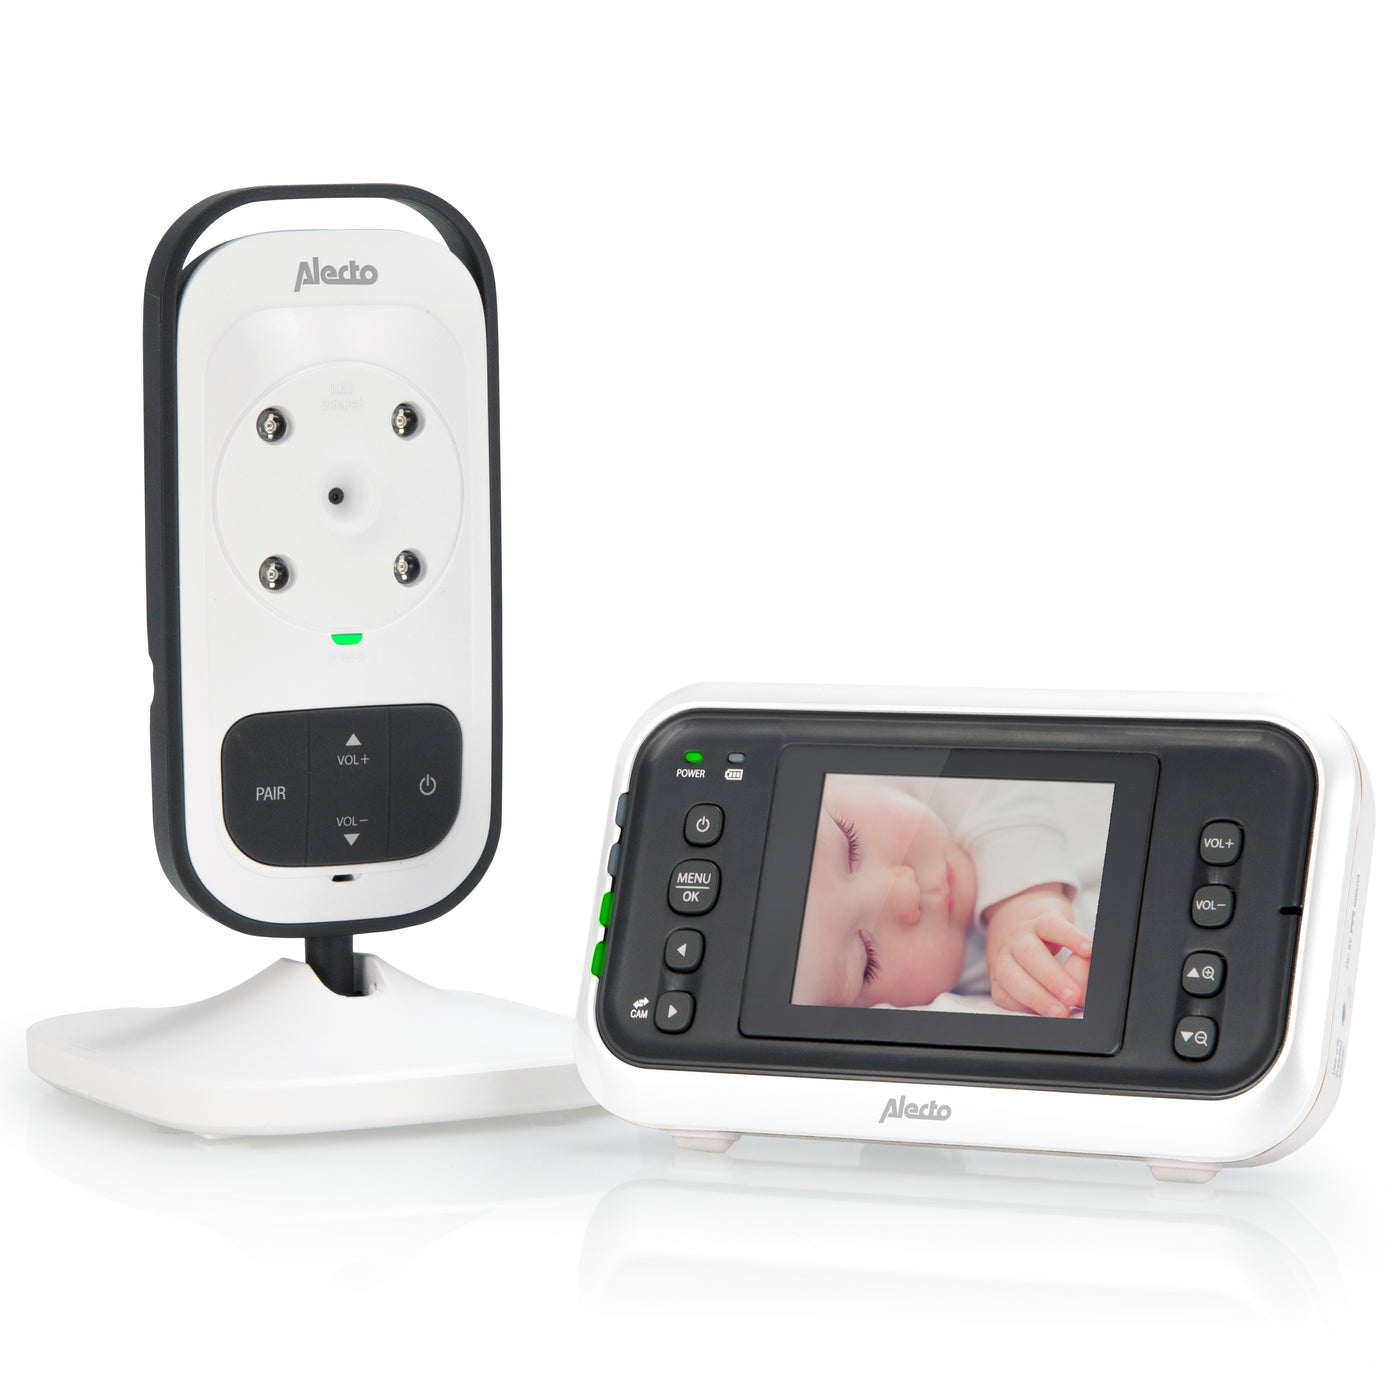 Alecto DVM-75 - Babyphone avec caméra et écran couleur 2.4", blanc/anthracite